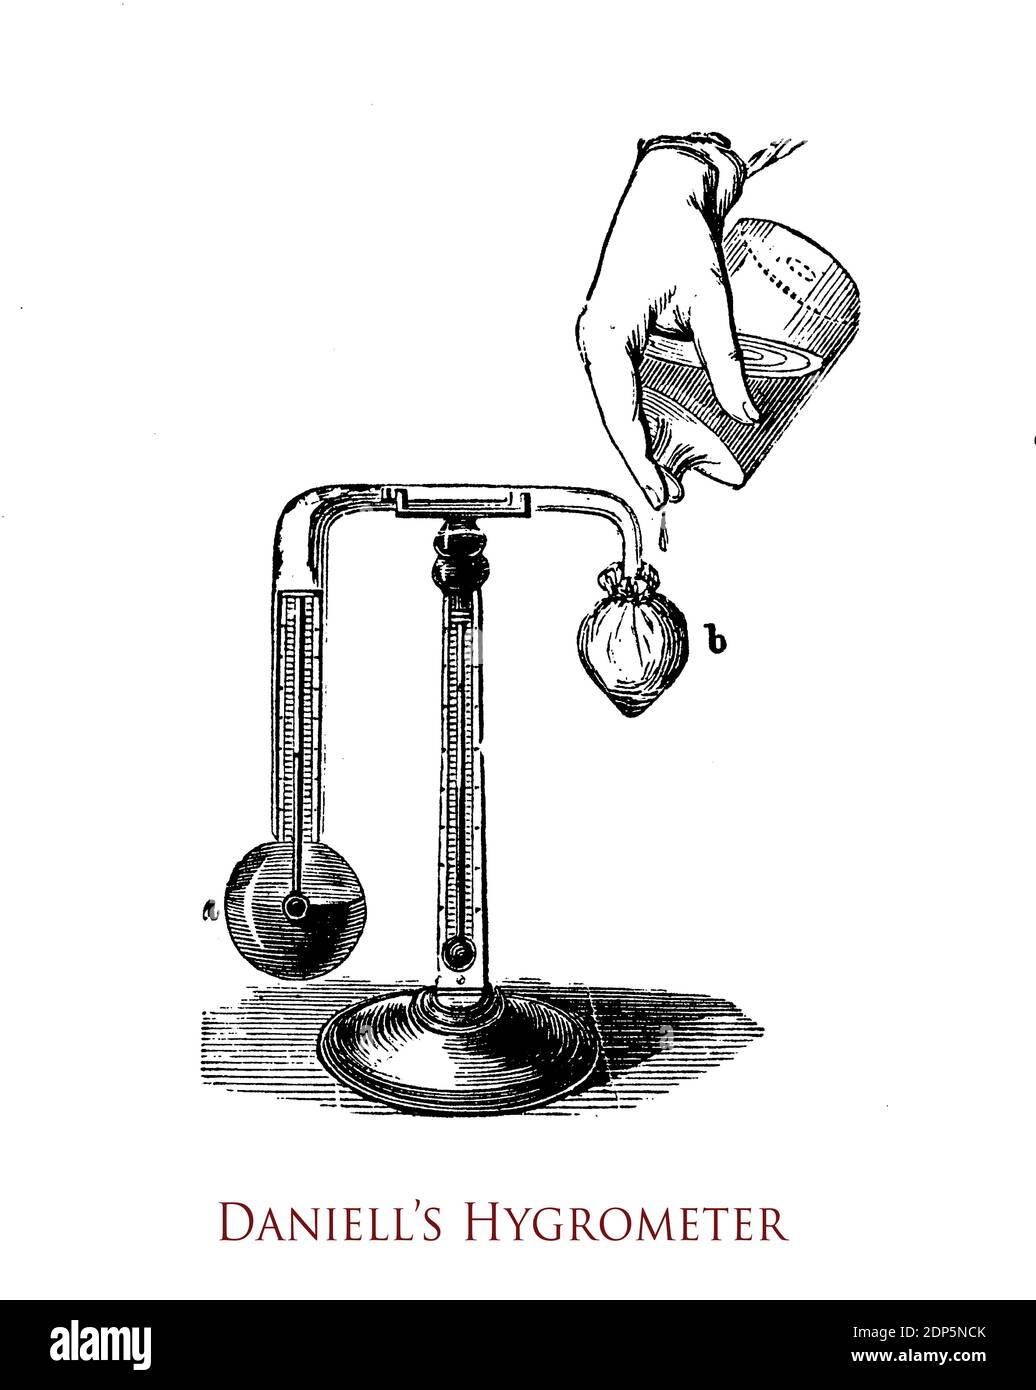 Das Hygrometer von Daniell misst die Luftfeuchtigkeit, es besteht aus einem Thermometer und zwei Glaskugeln, eine davon mit im Inneren kondensierenden Ätherdämpfen gefüllt. Stockfoto